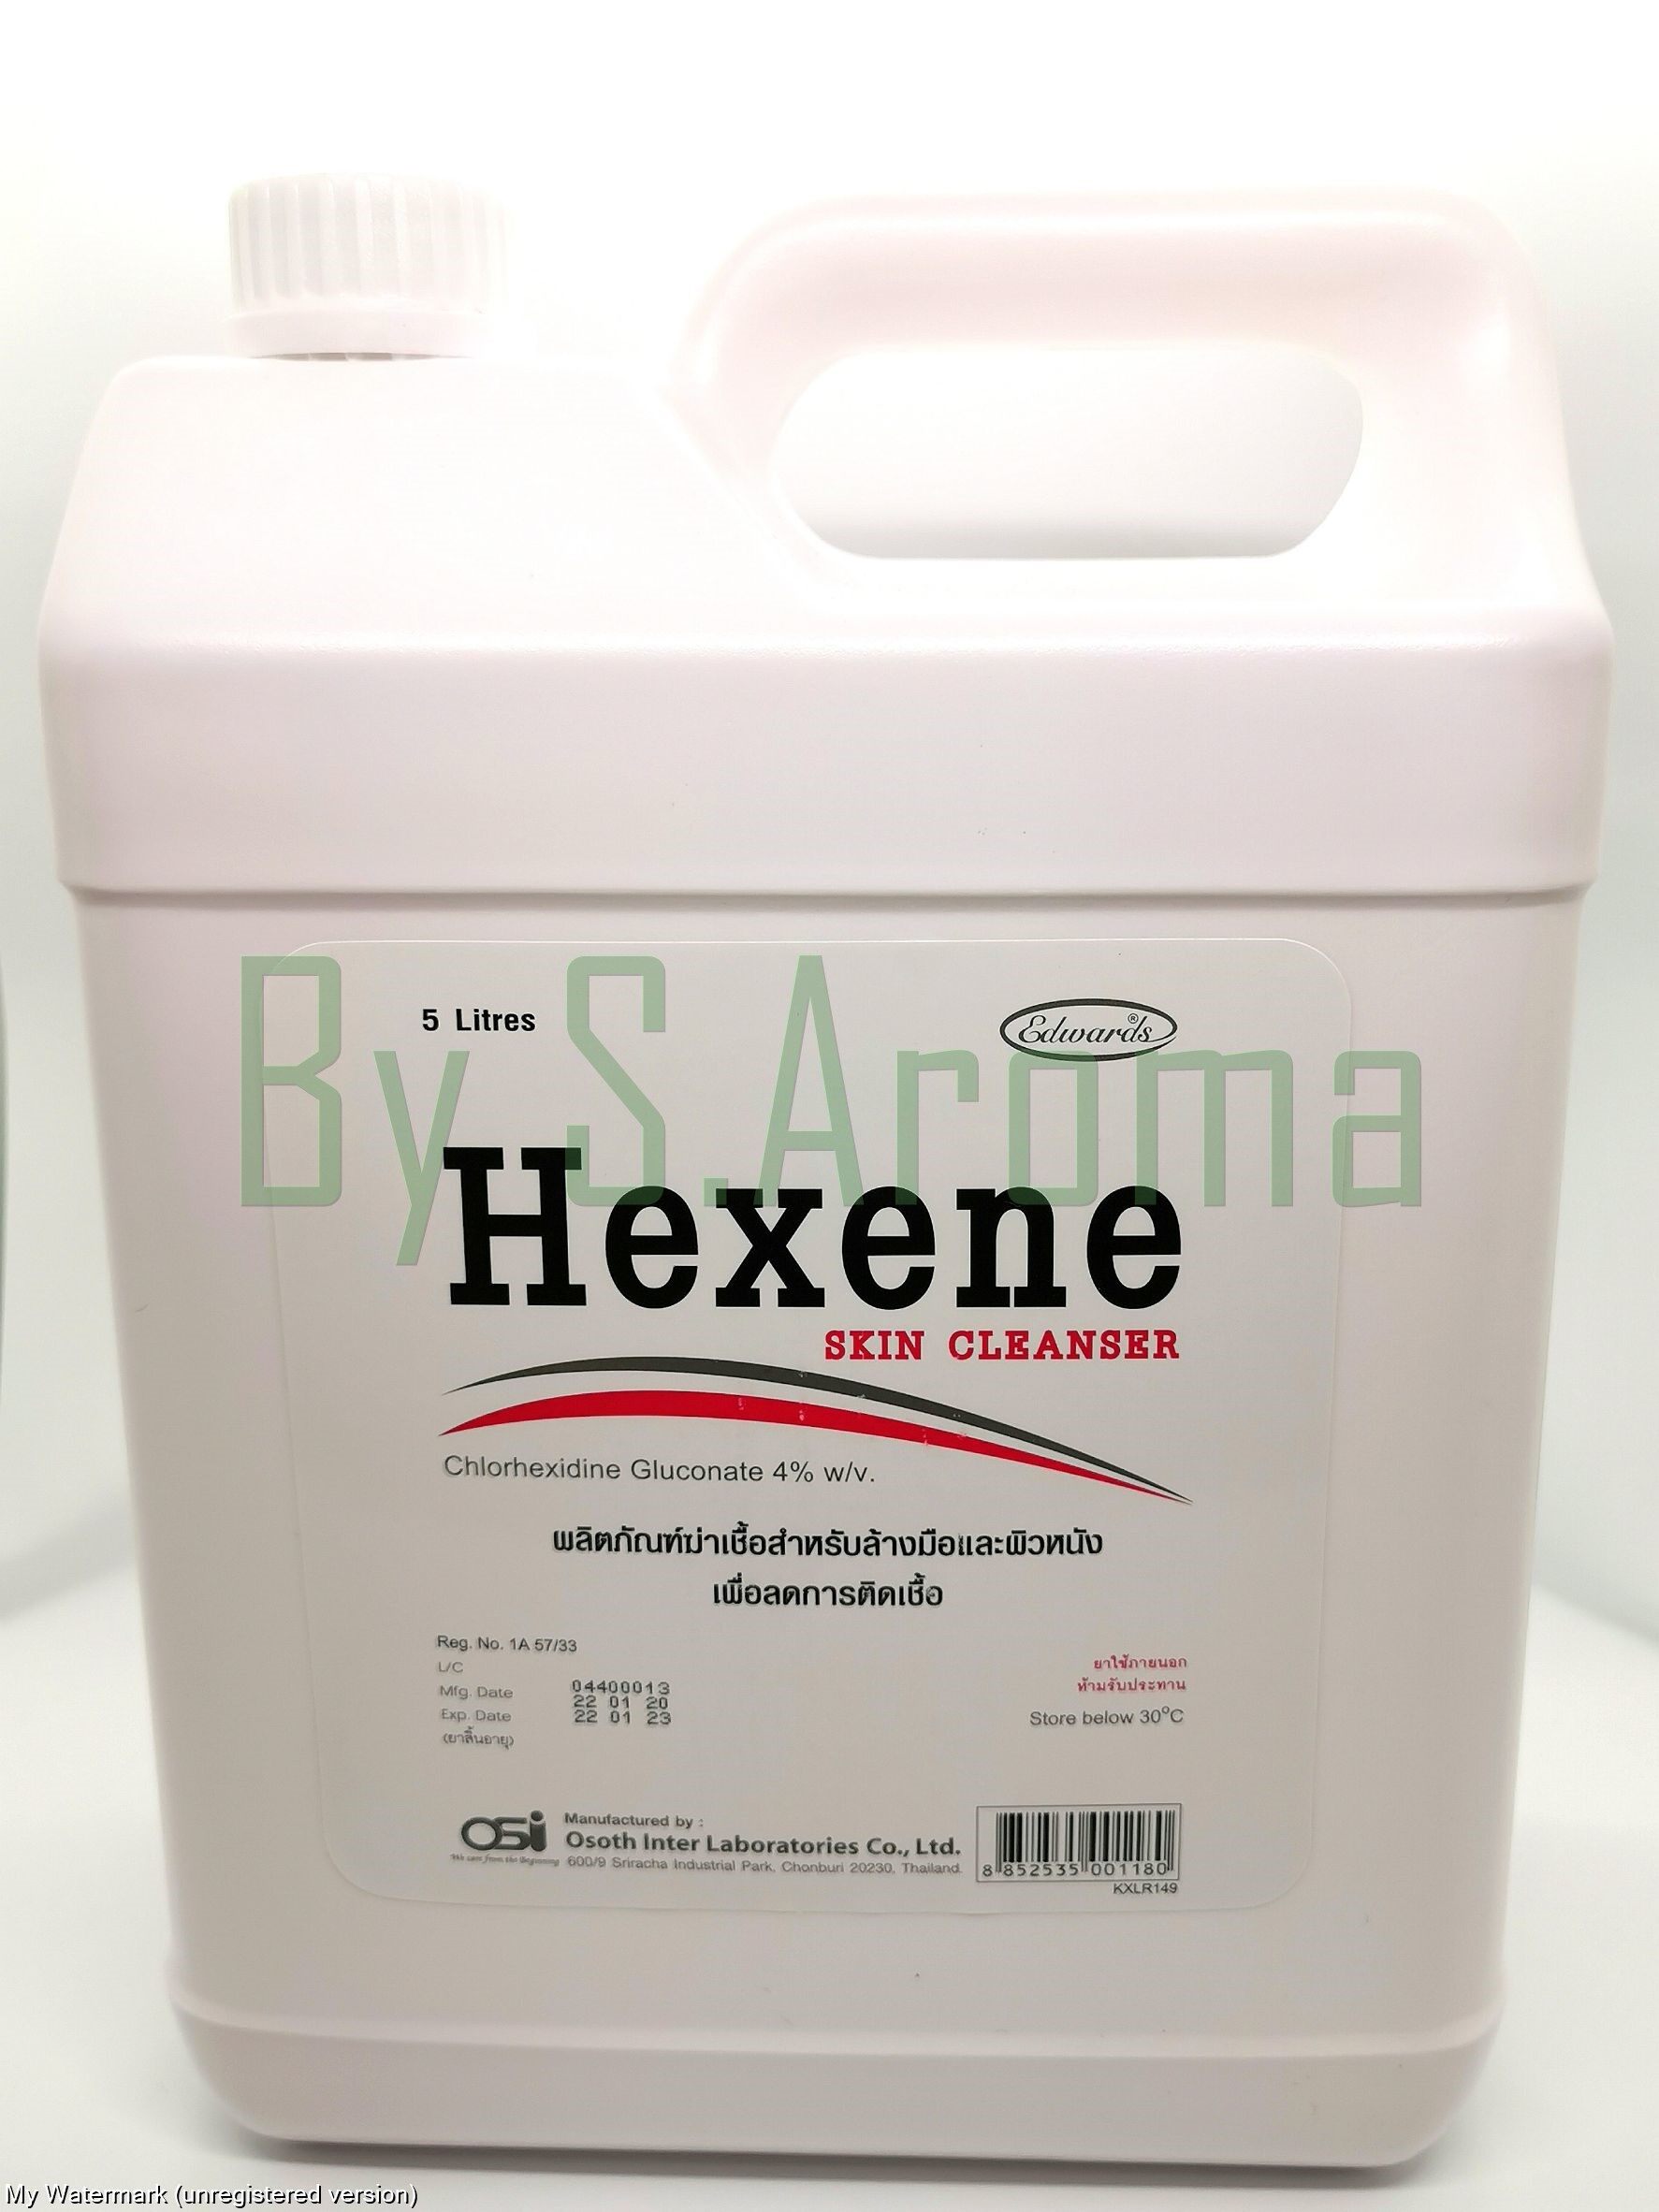 Hexene Skin Cleanser น้ำยาทำความสะอาด (Chlorhexidine Gluconate 4% w/v) 5 ลิตร